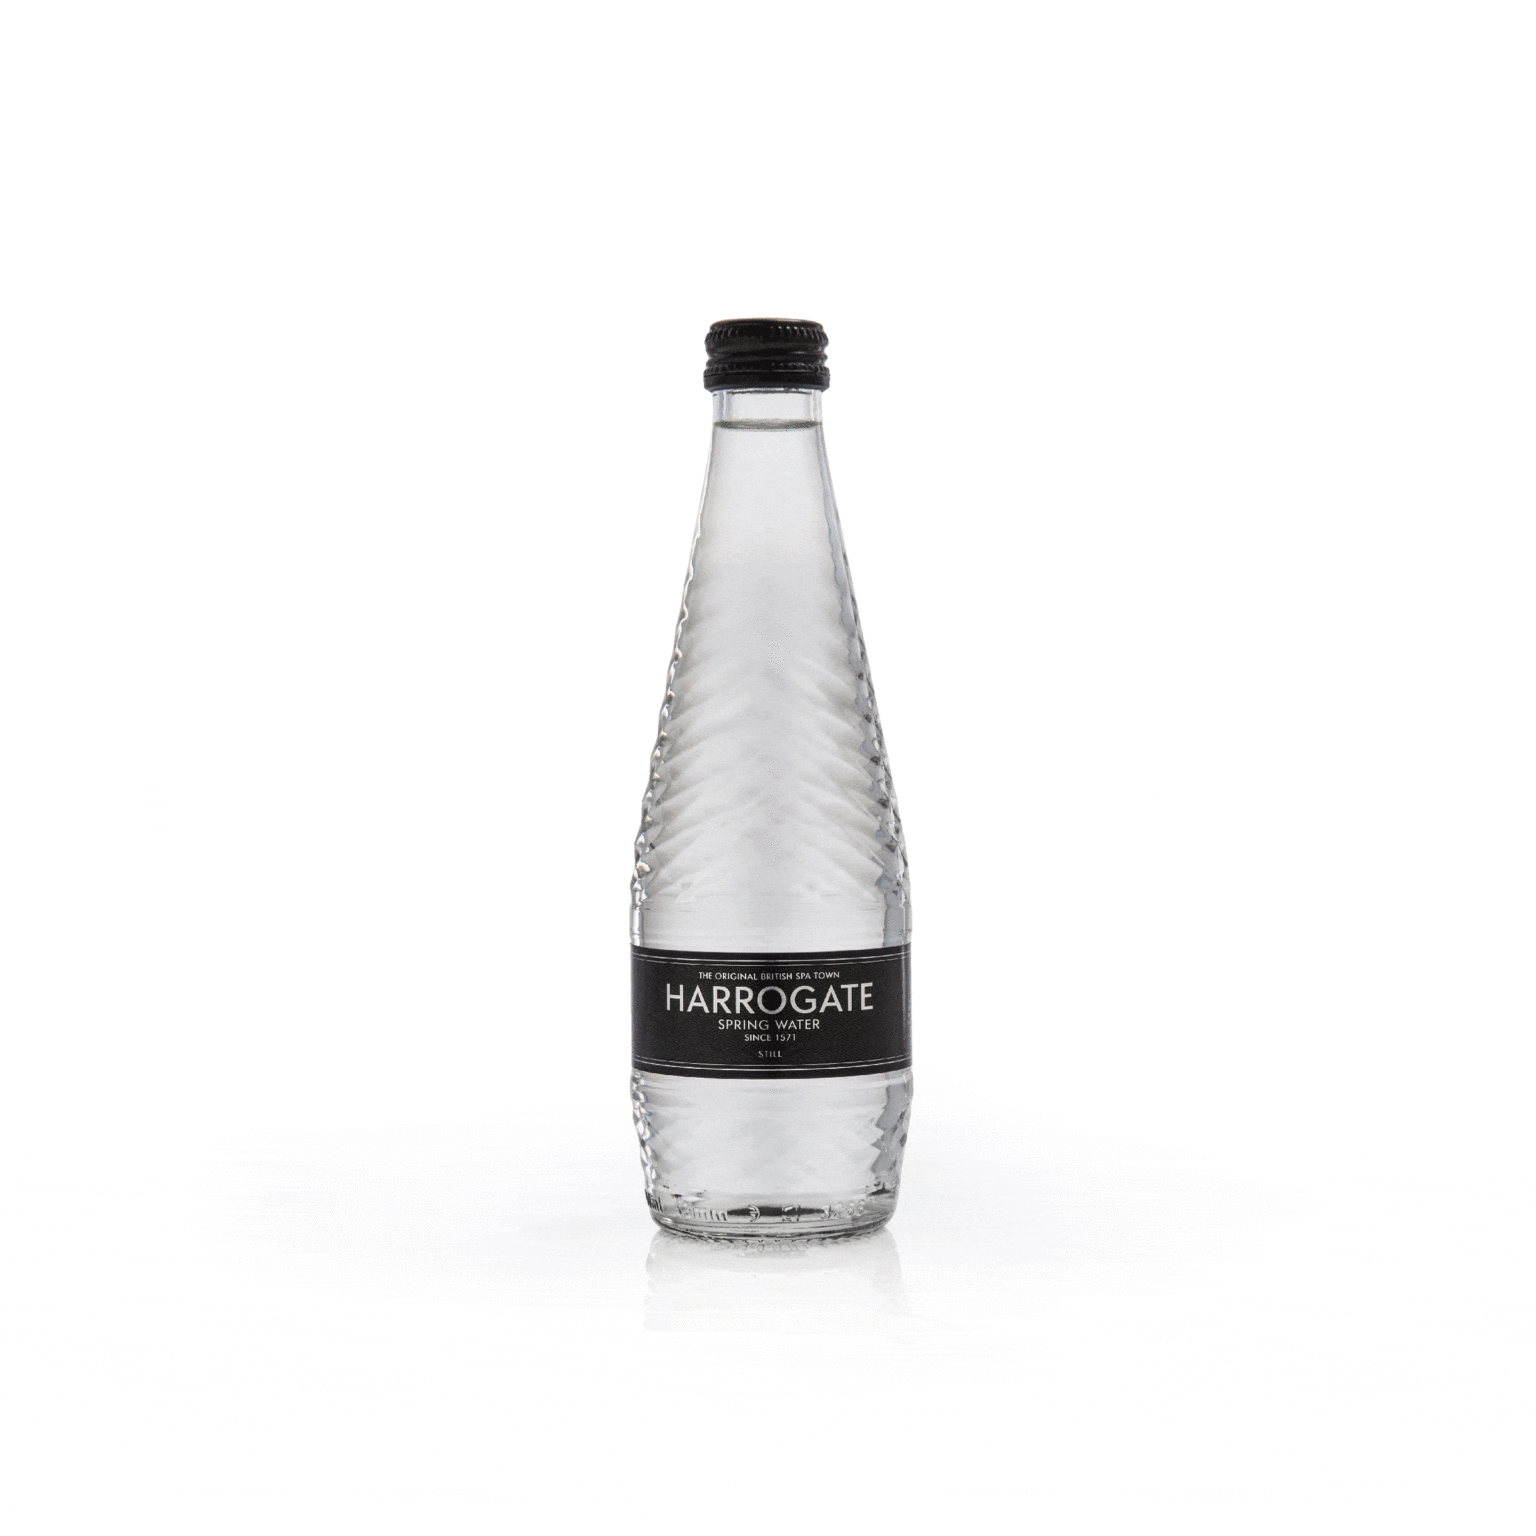 harrogate Spring Water bottle label design by Bluestone98